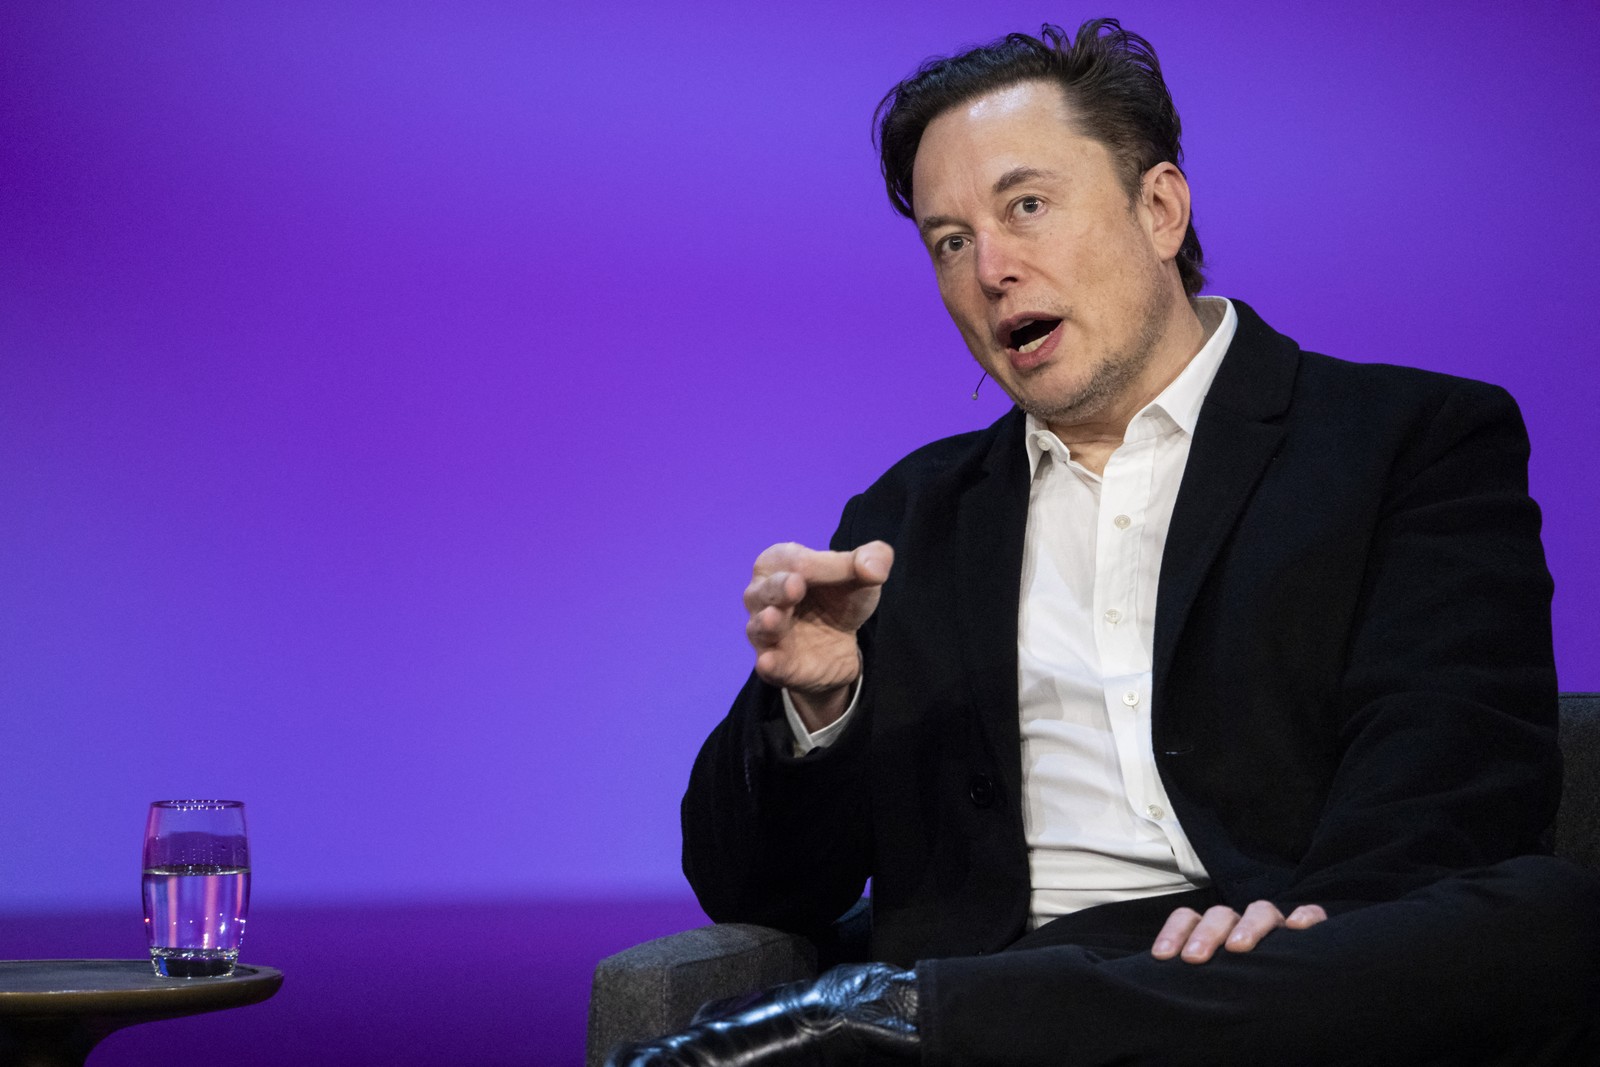 Com forte alta das ações da Tesla, Elon Musk recuperou seu lugar de pessoa mais rica do mundo, com um patrimônio de US$ 187,1 bilhões